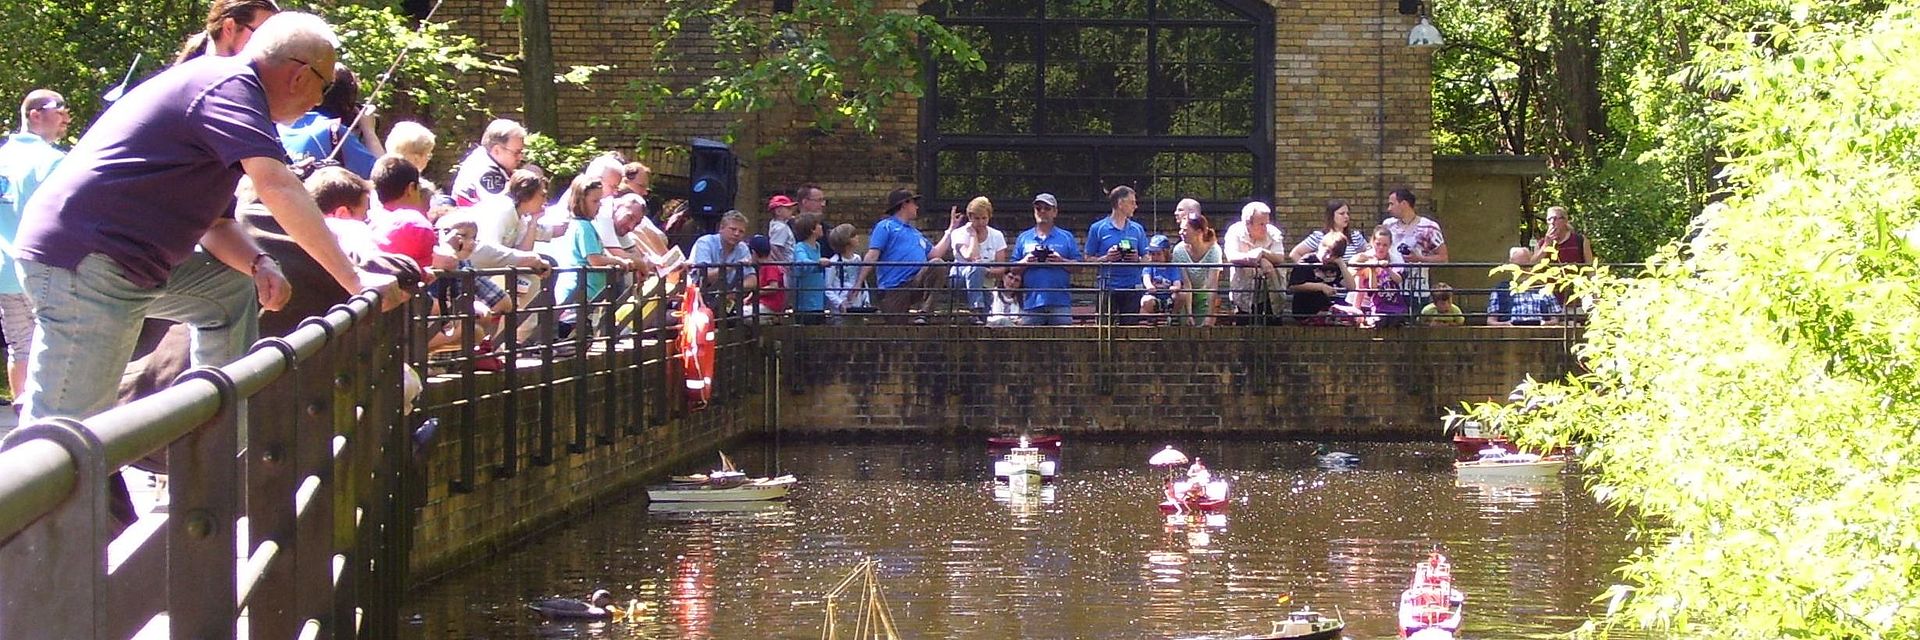 Besucherinnen und Besucher schauen auf den Museumteich im Park, auf dem kleine Modellschiffe hin und her fahren.